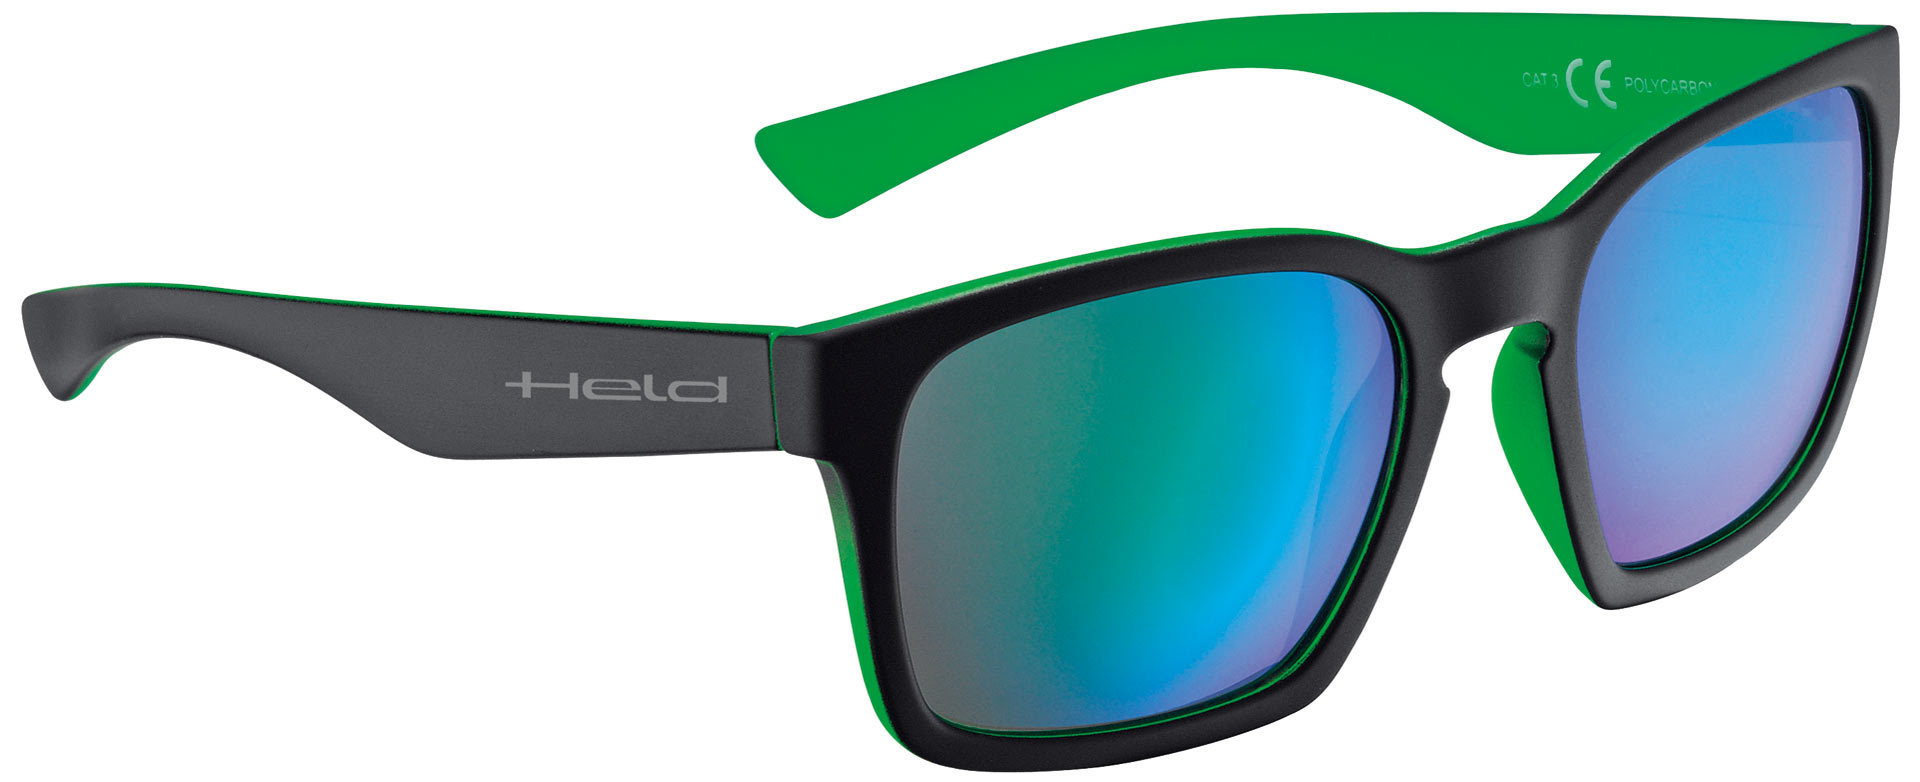 солнцезащитные очки freeway черный зеленый Очки Held 9740 солнцезащитные, черный/зеленый